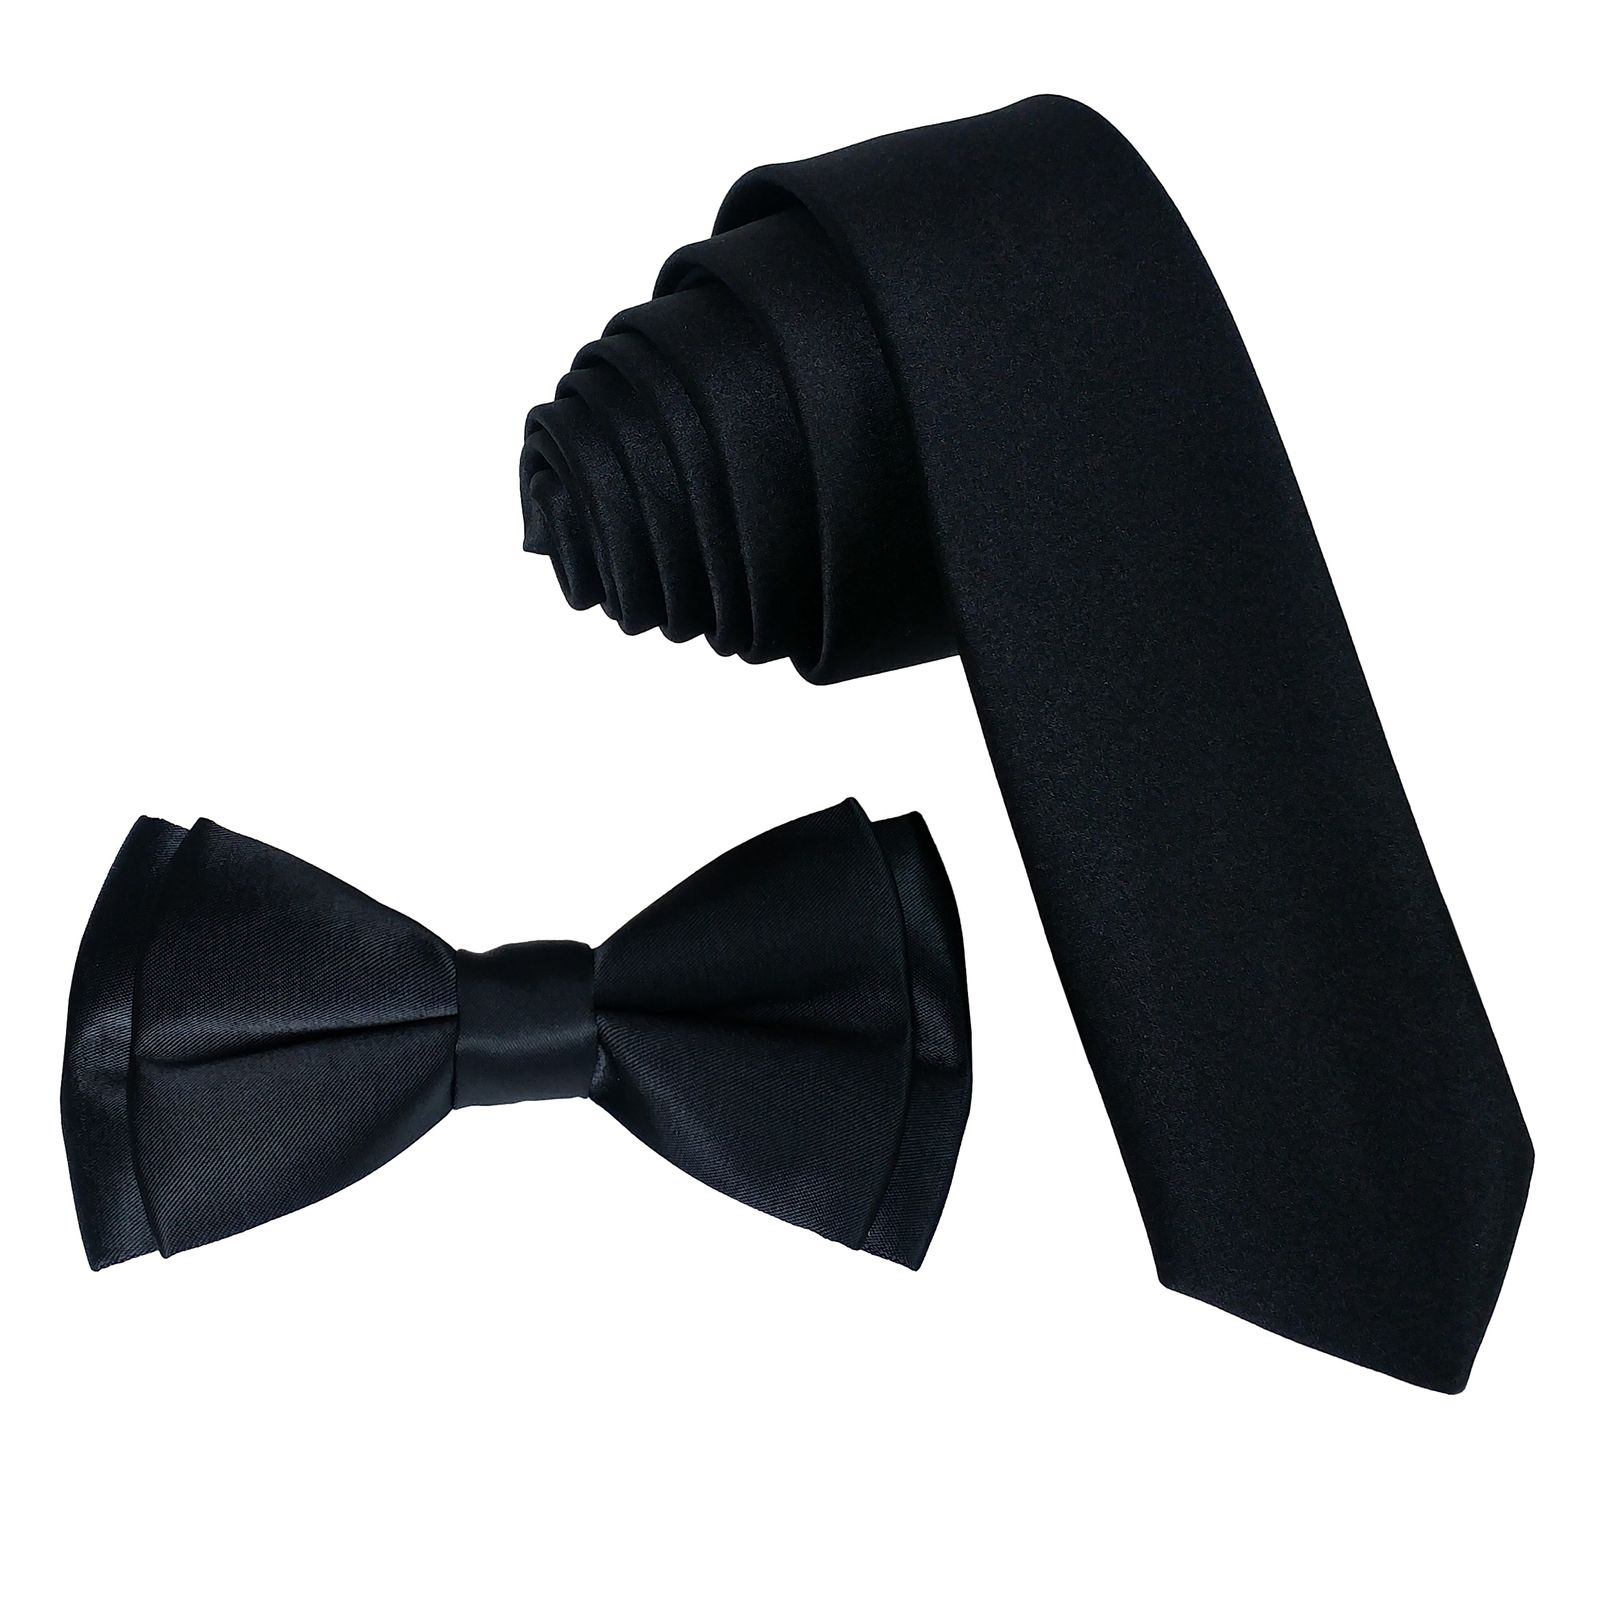  ست کراوات و پاپیون و دستمال جیب مردانه کد B3 -  - 3